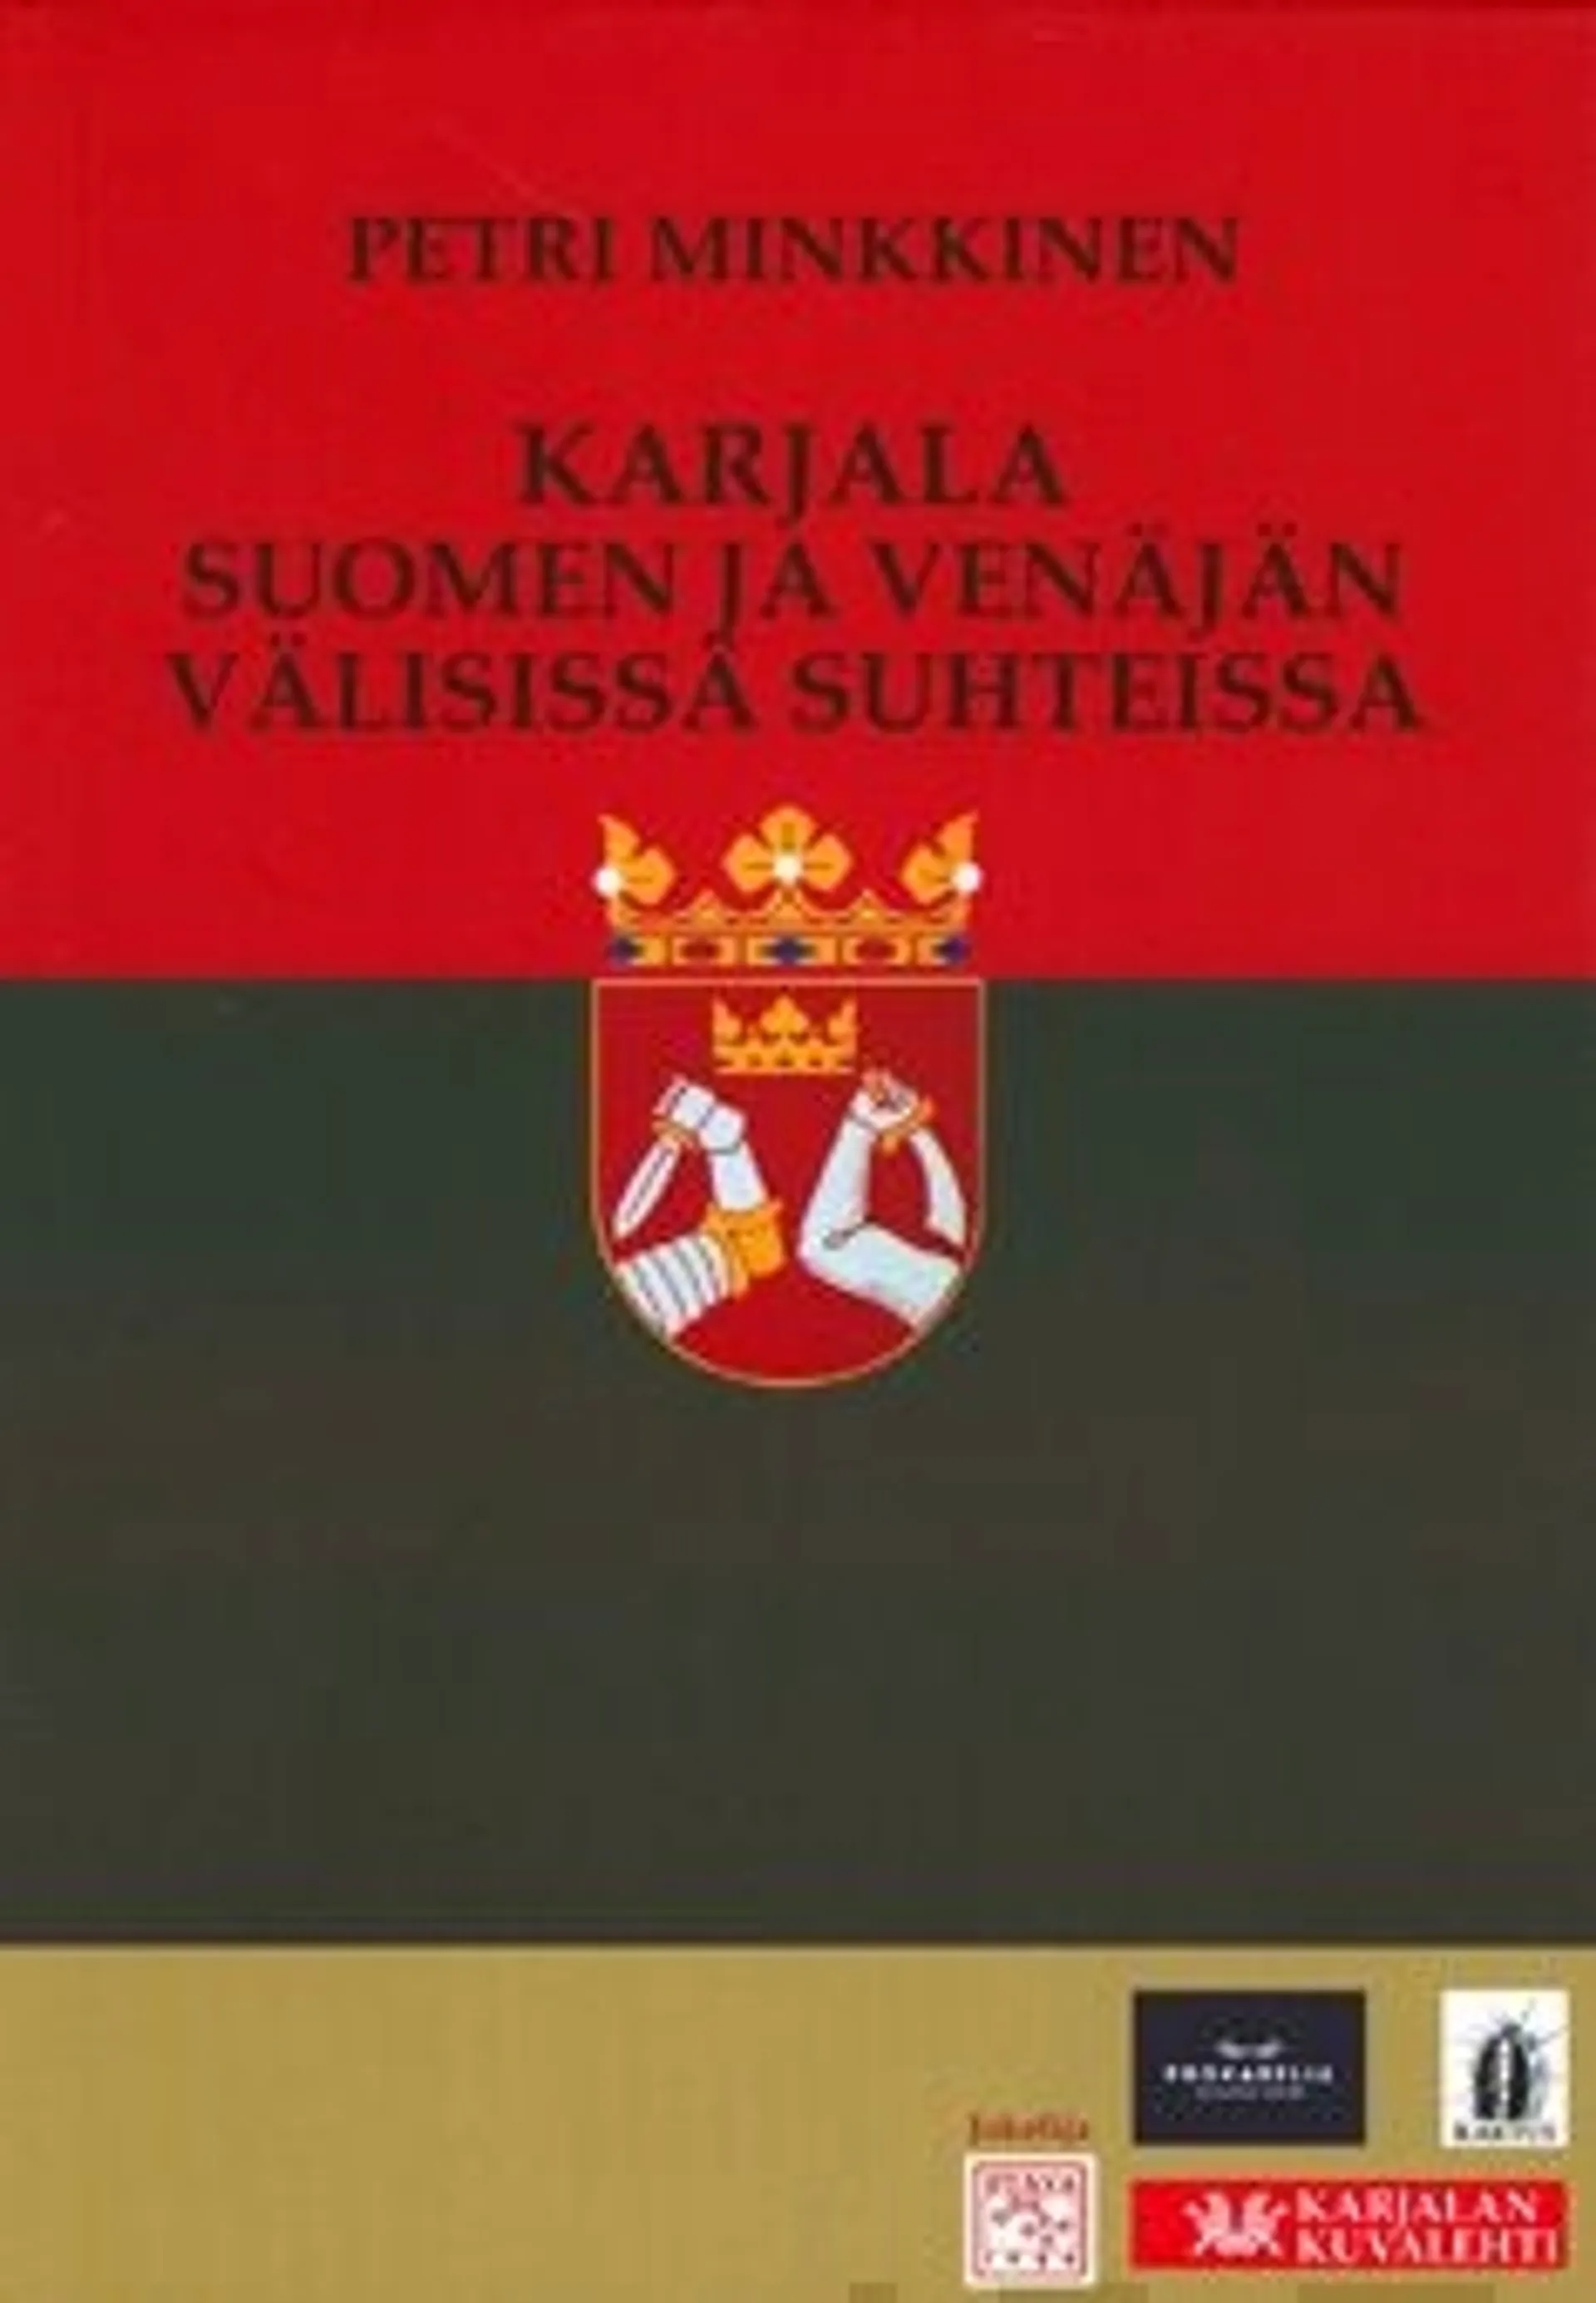 Minkkinen, Karjala Suomen ja Venäjän välisissä suhteissa